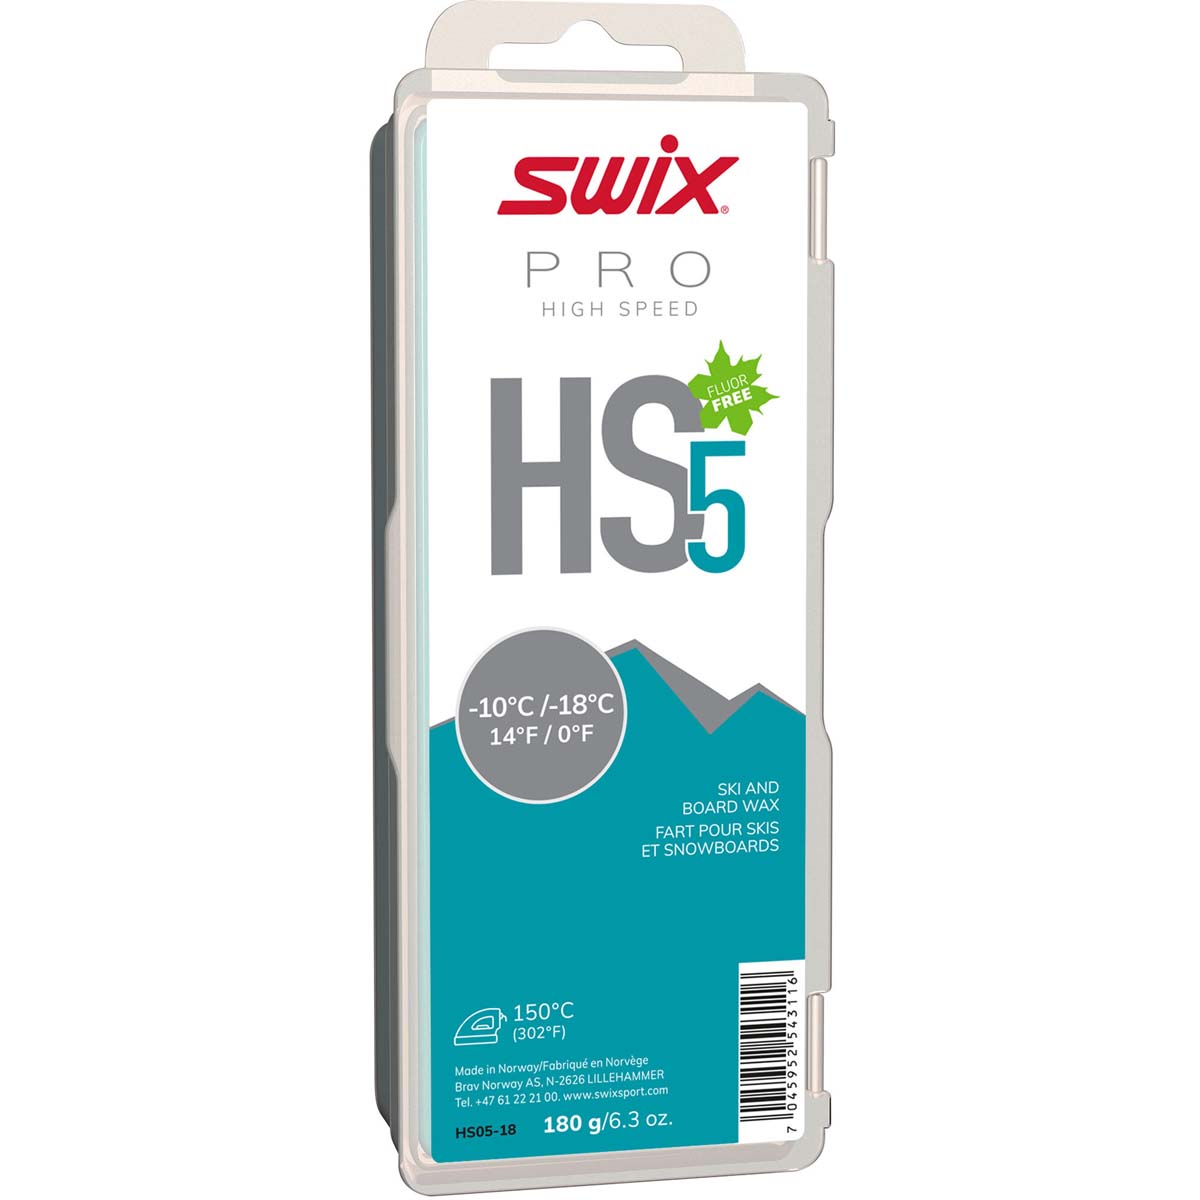 Skluzný vosk Swix High Speed, HS5 tyrkysový, -10°C/-18°C,180g